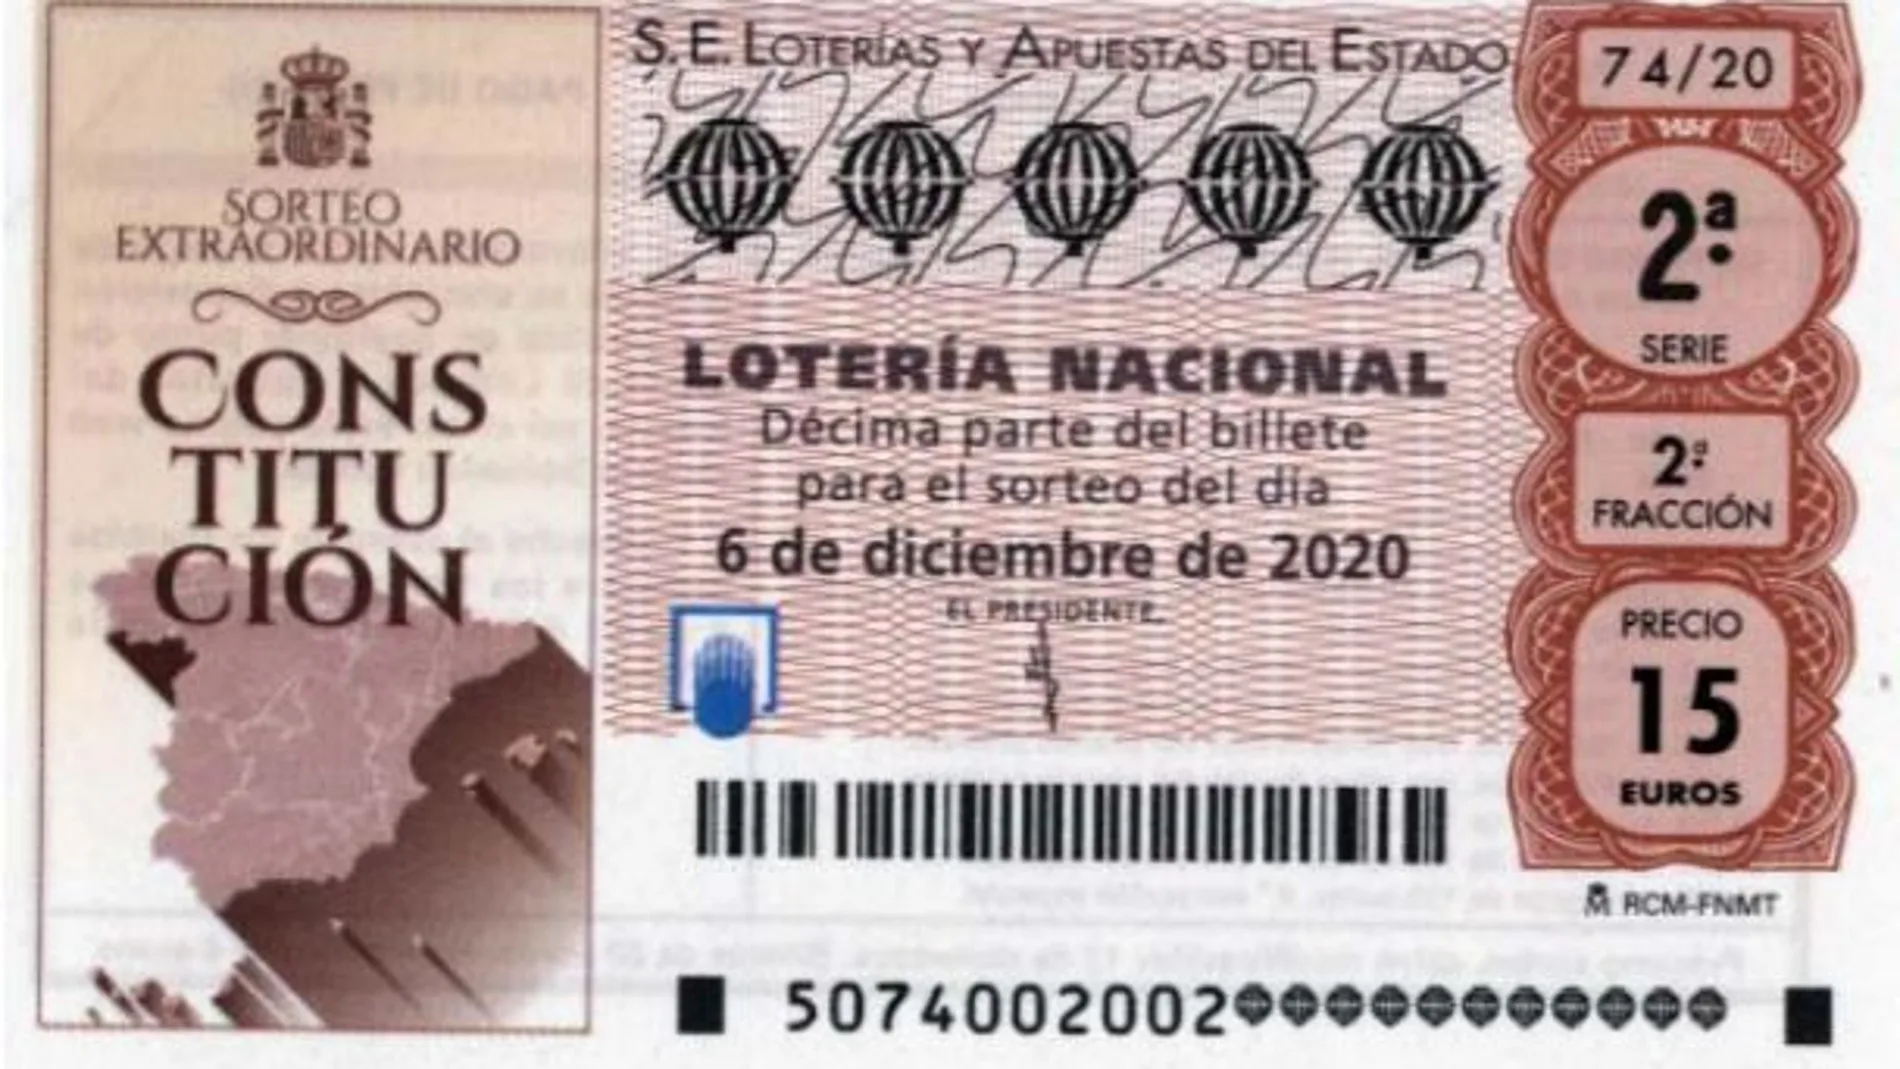 Hoy, 6 de diciembre, se celebra el Sorteo Extraordinario de la Constitución de la Lotería Nacional